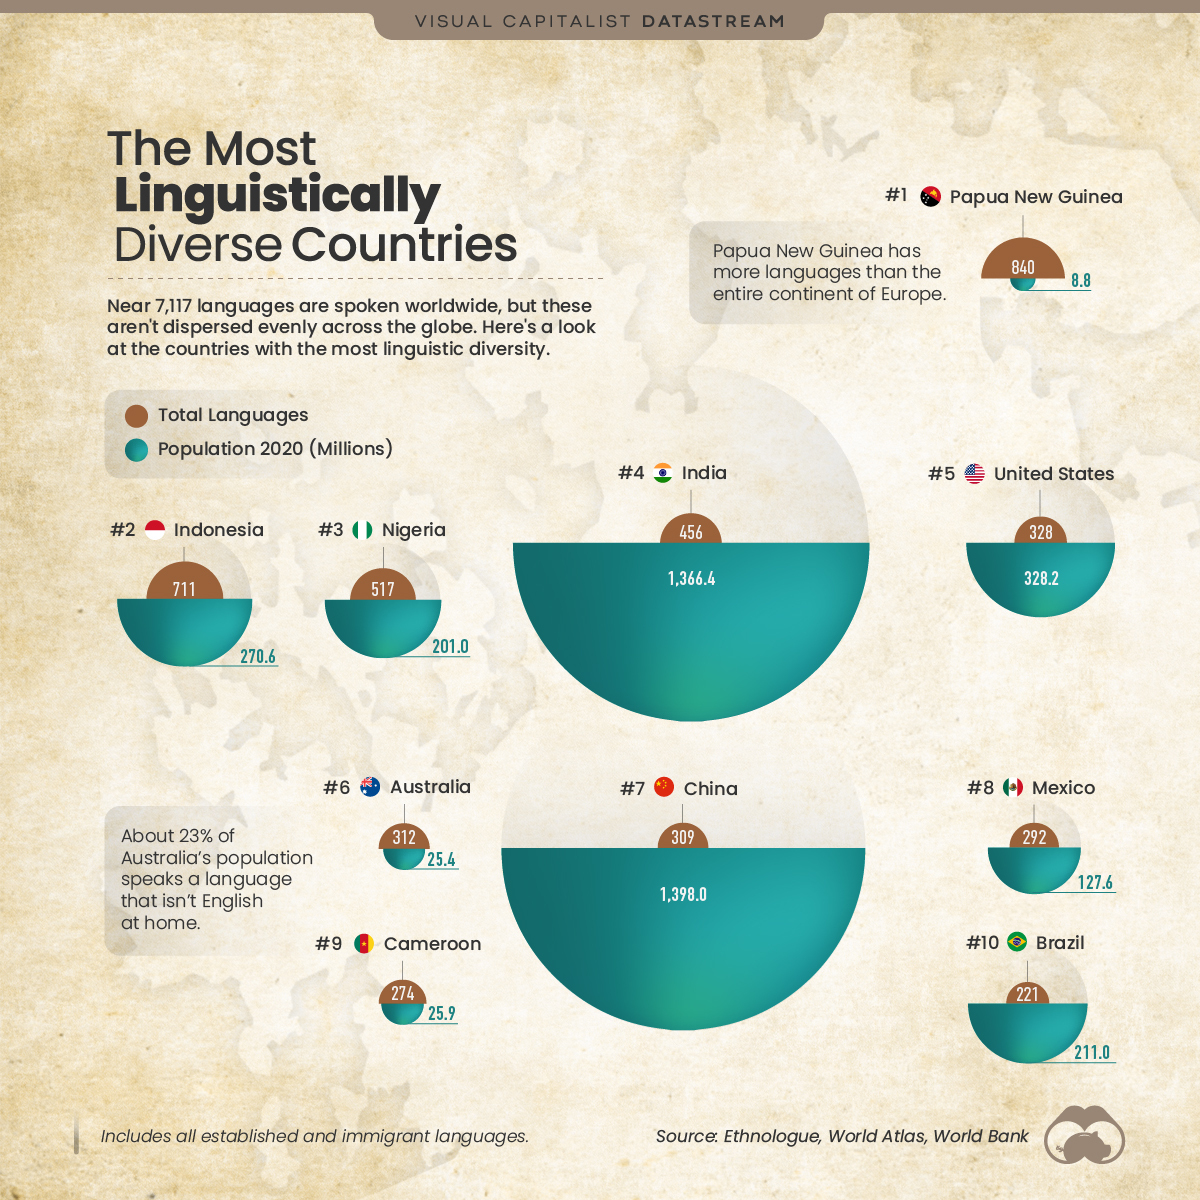 Clasificación de los países con mayor flujo de datos de diversidad lingüística